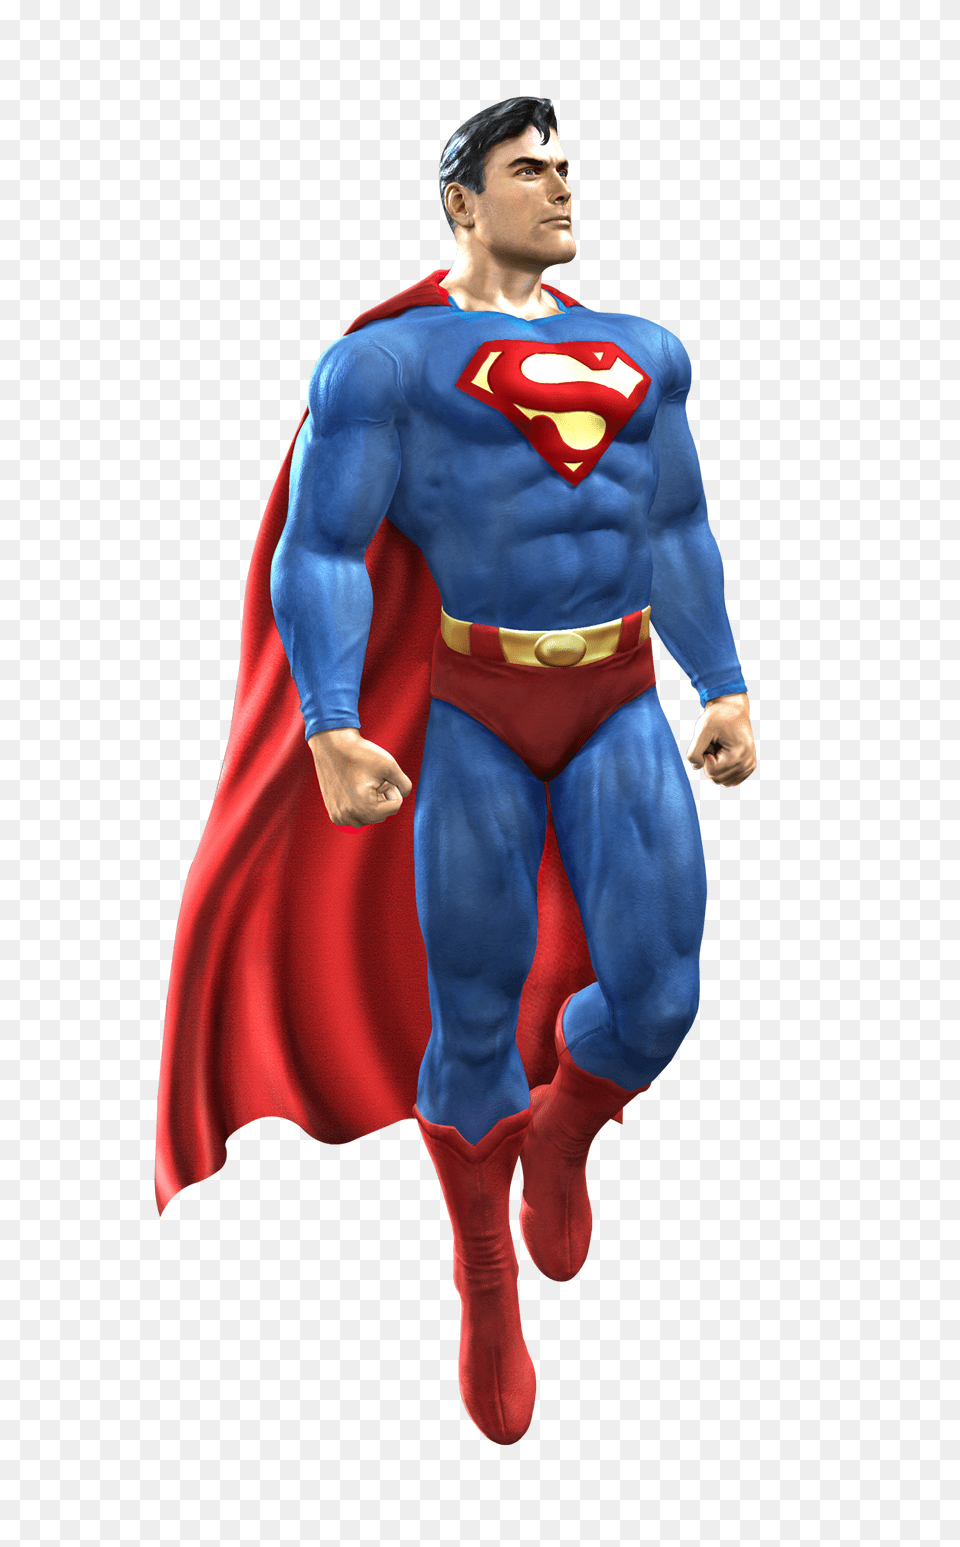 Pngpix Com Superman Transparent Cape, Clothing, Costume, Person Png Image